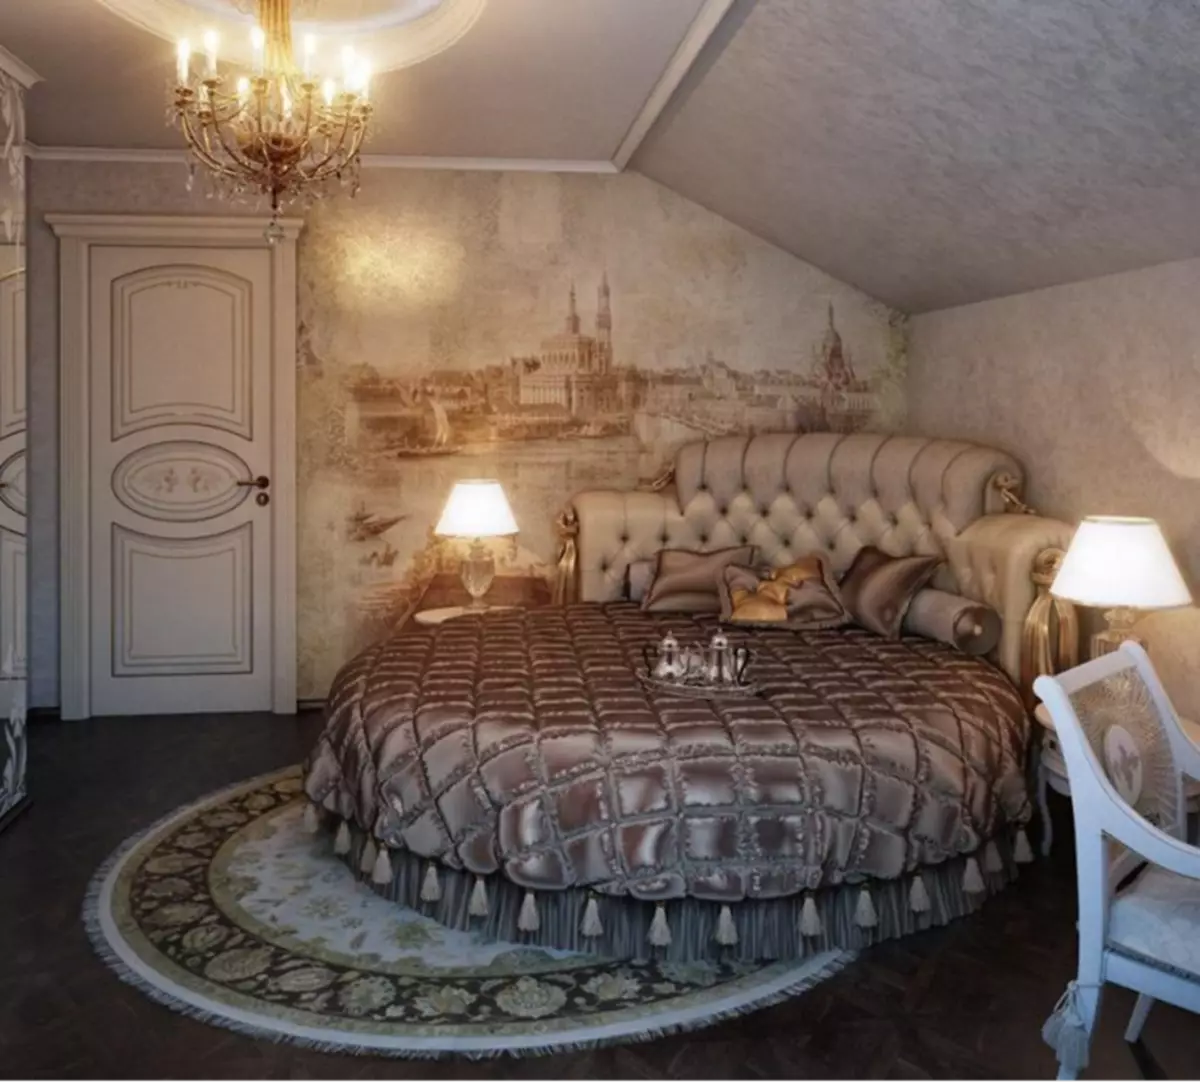 Karpet bundar di interior kamar tidur gaya klasik